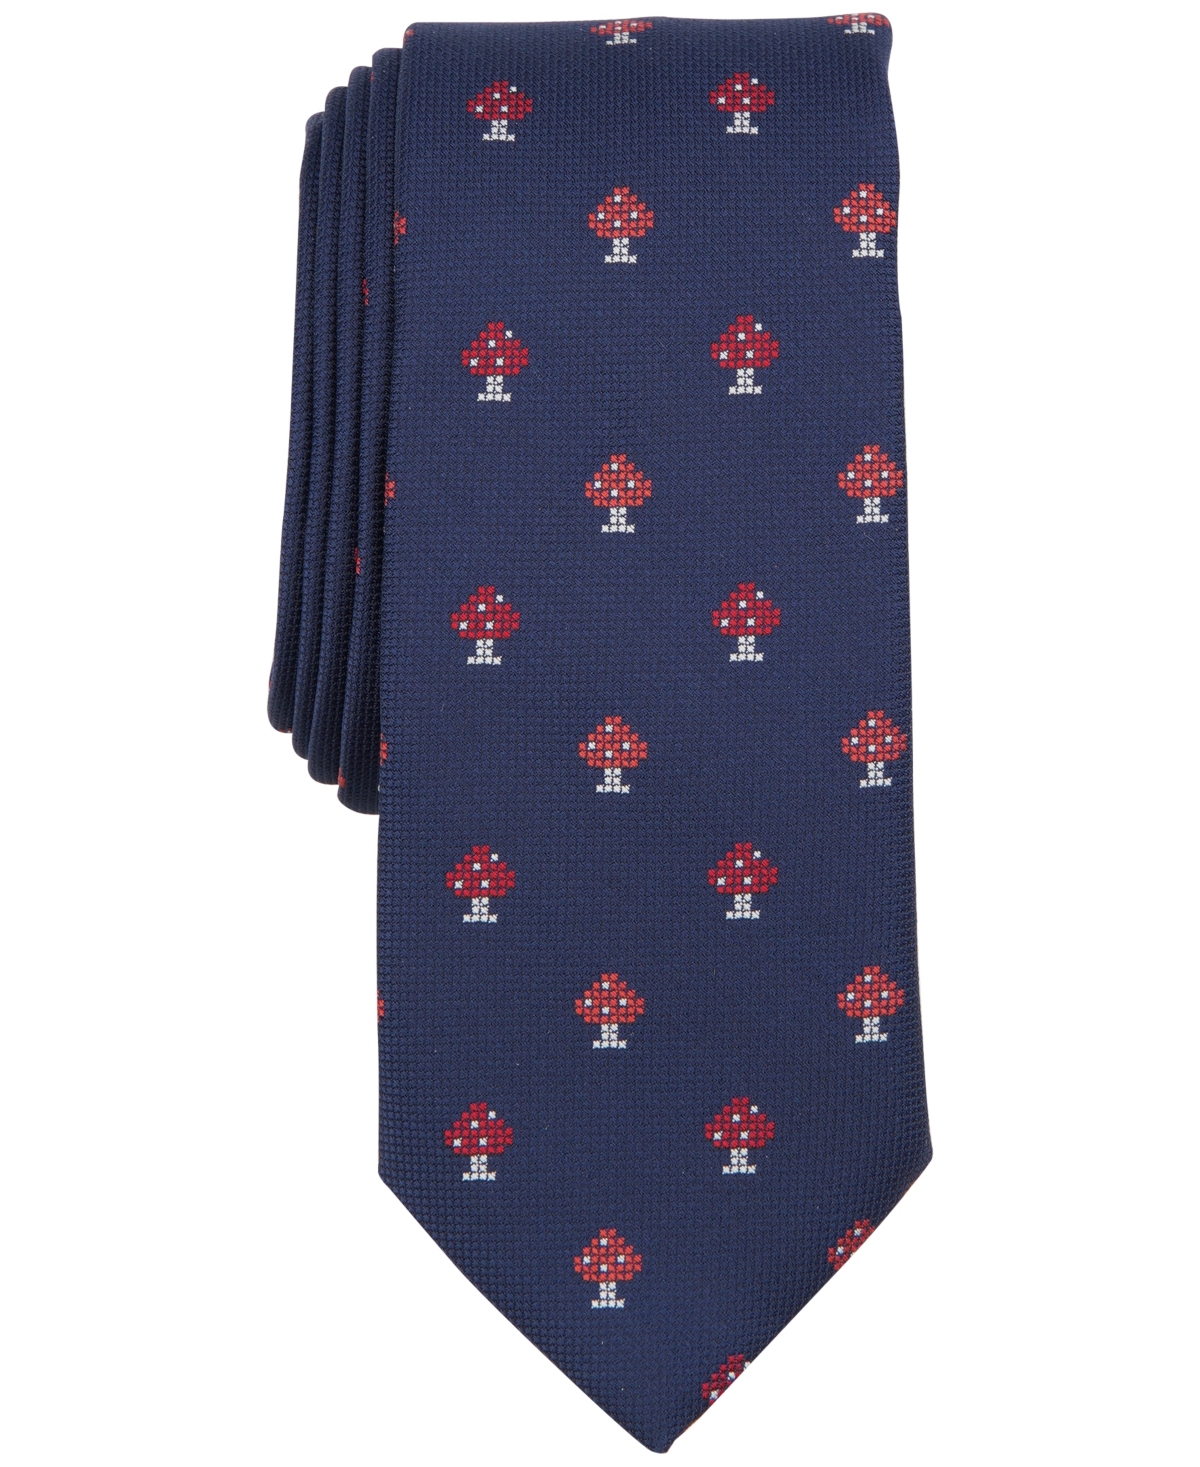 Men's Bolivar Mushroom Tie, Created for Macy's - Dark Navy